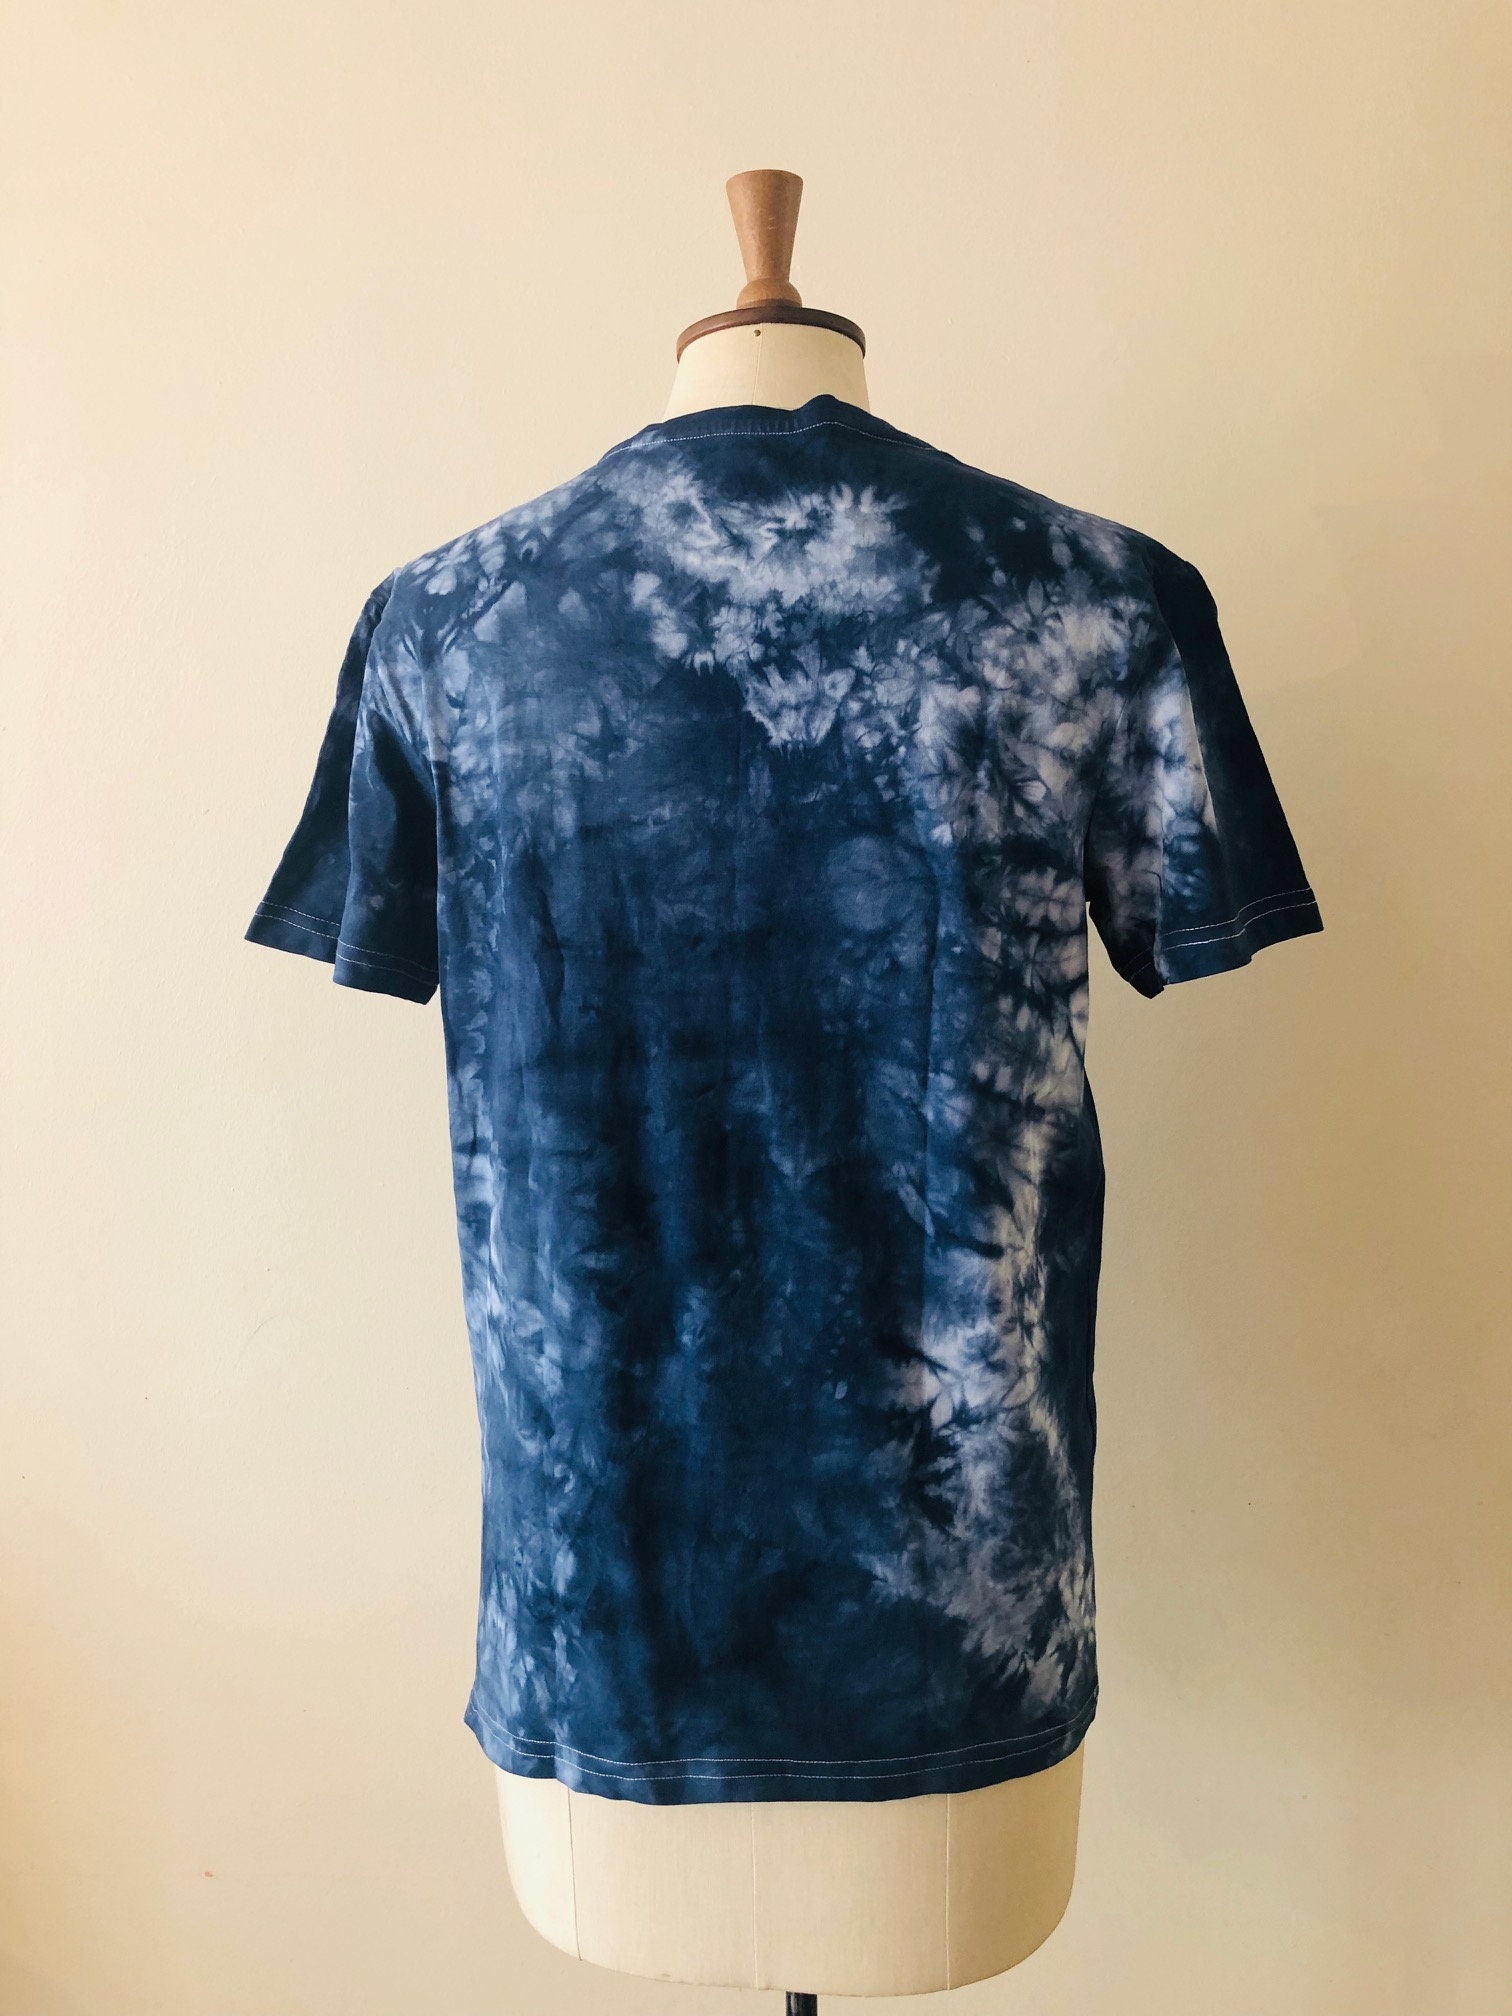 Blue Tie Dye Tshirt Psychedelic Indigo Tie Dye Unisex | Etsy UK